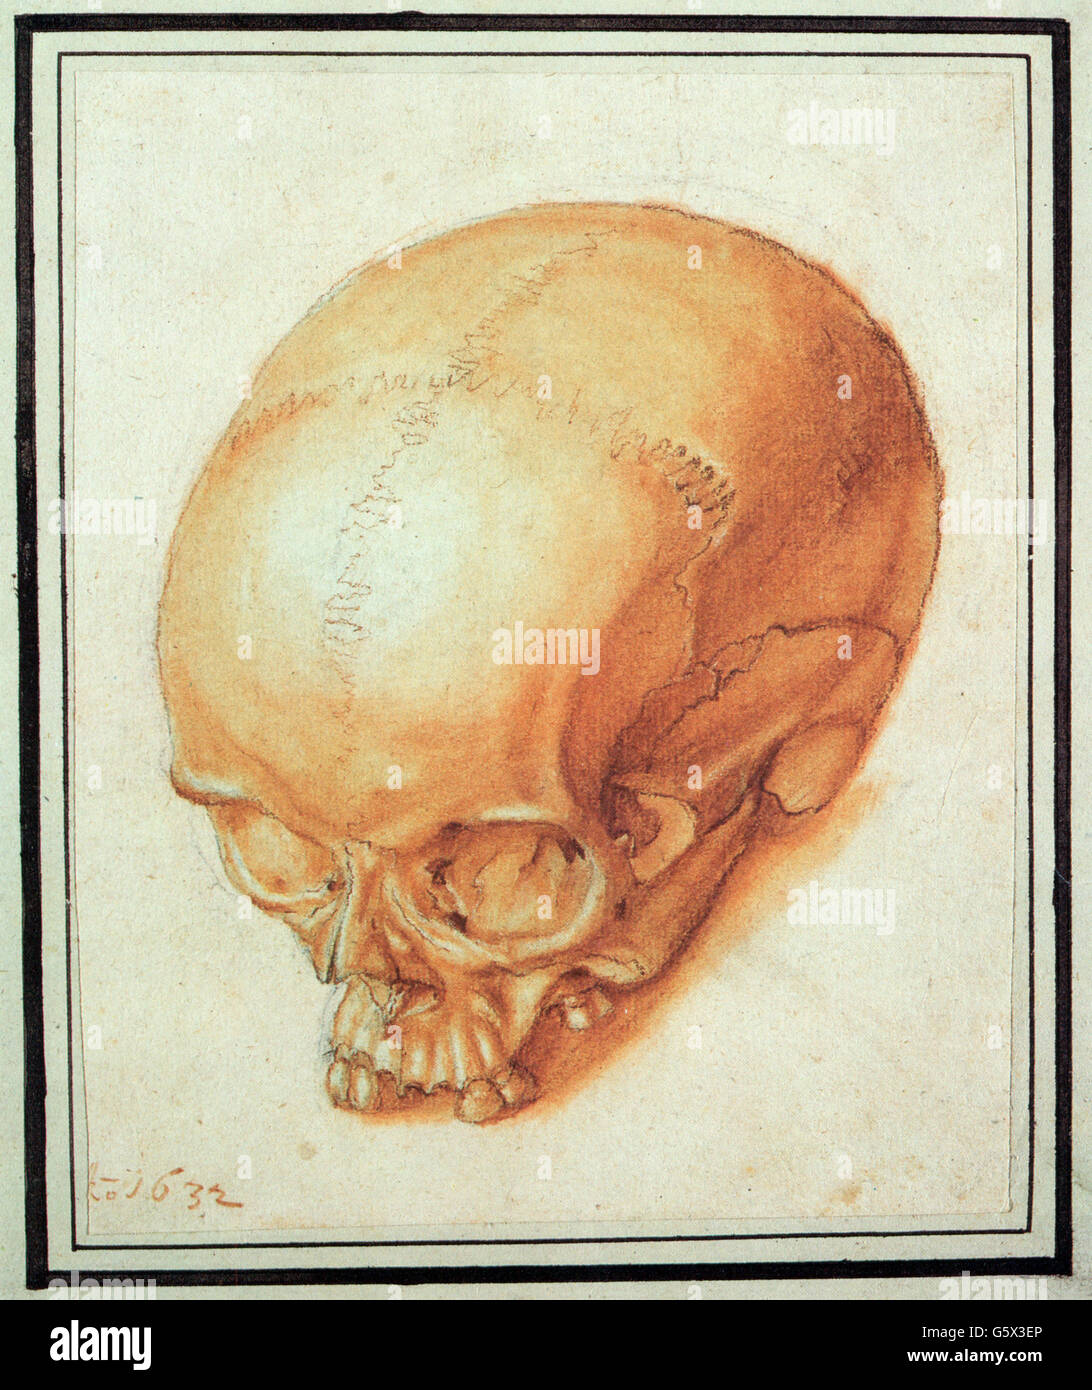 Belle arti, Meyer, Rudolf (1605 - 1638), disegno, 'skull - memento mori', 1632, penna, gesso e inchiostro su carta fatta a mano, 17,9 x 14,1 cm, diritti aggiuntivi-clearences-non disponibile Foto Stock